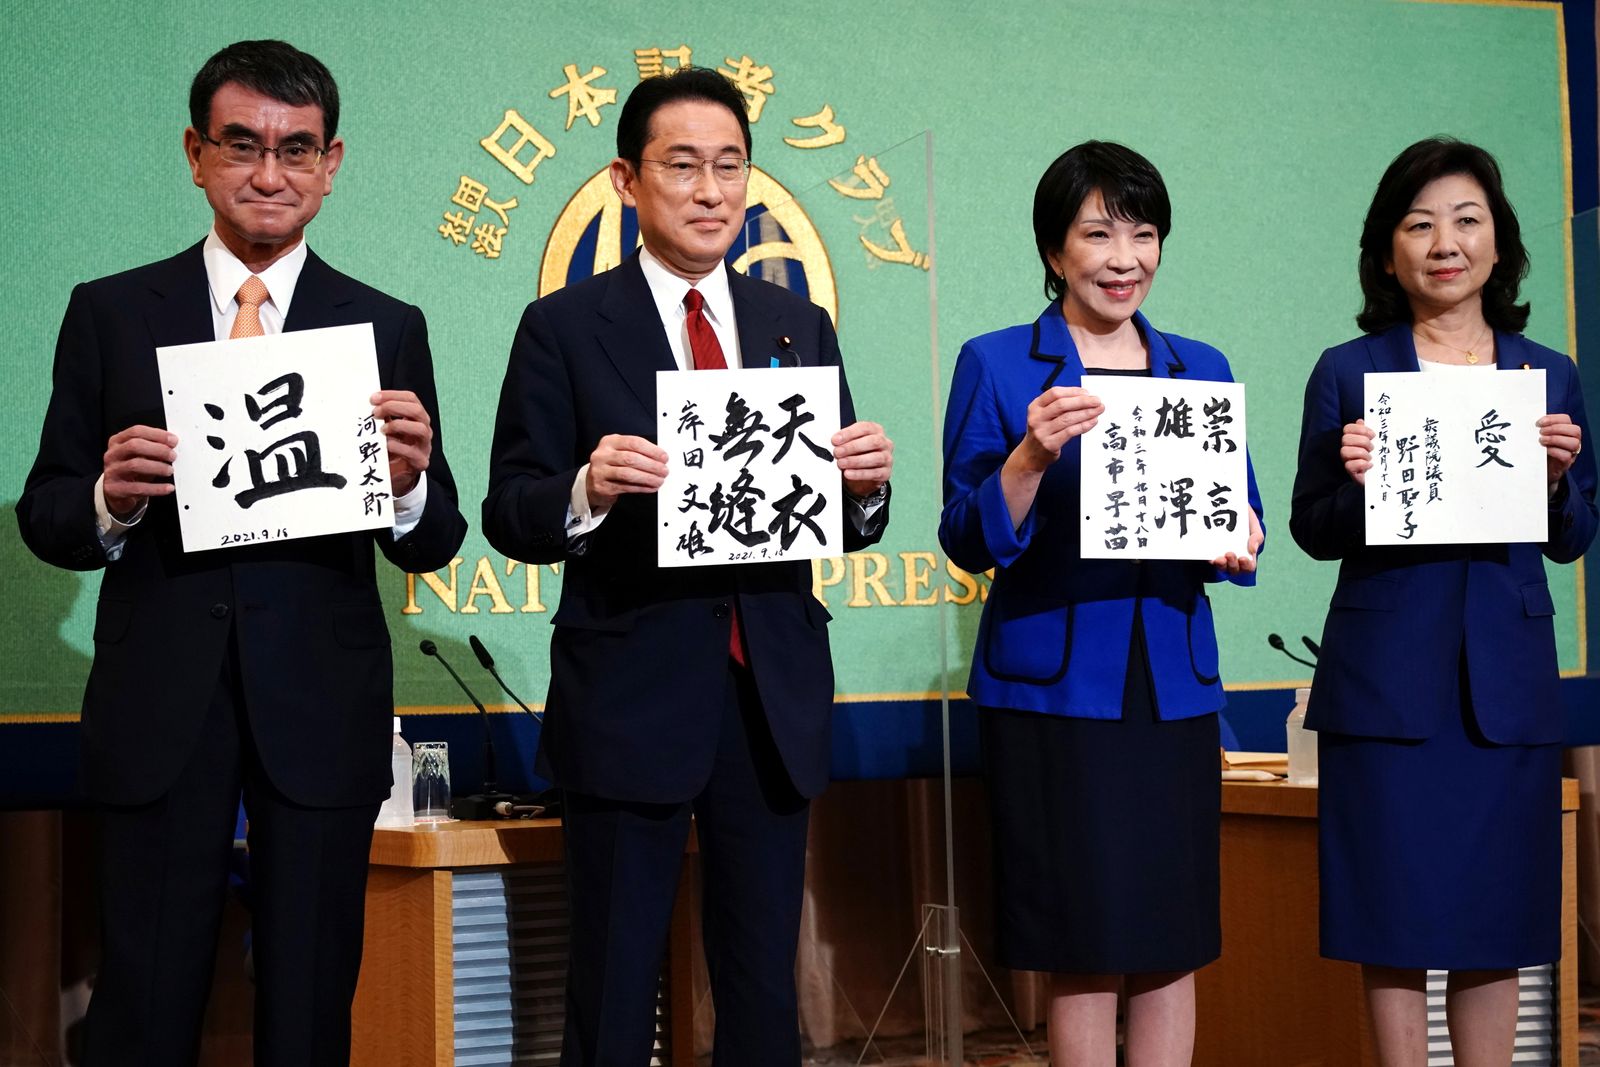 المرشحون الأربعة لزعامة الحزب الديمقراطي الليبرالي الحاكم (من اليسار إلى اليمين) تارو كونو وفوميو كيشيدا وسناي تاكايشي وسيكو نودا خلال مناظرة انتخابية في طوكيو - 18 سبتمبر 2021 - REUTERS